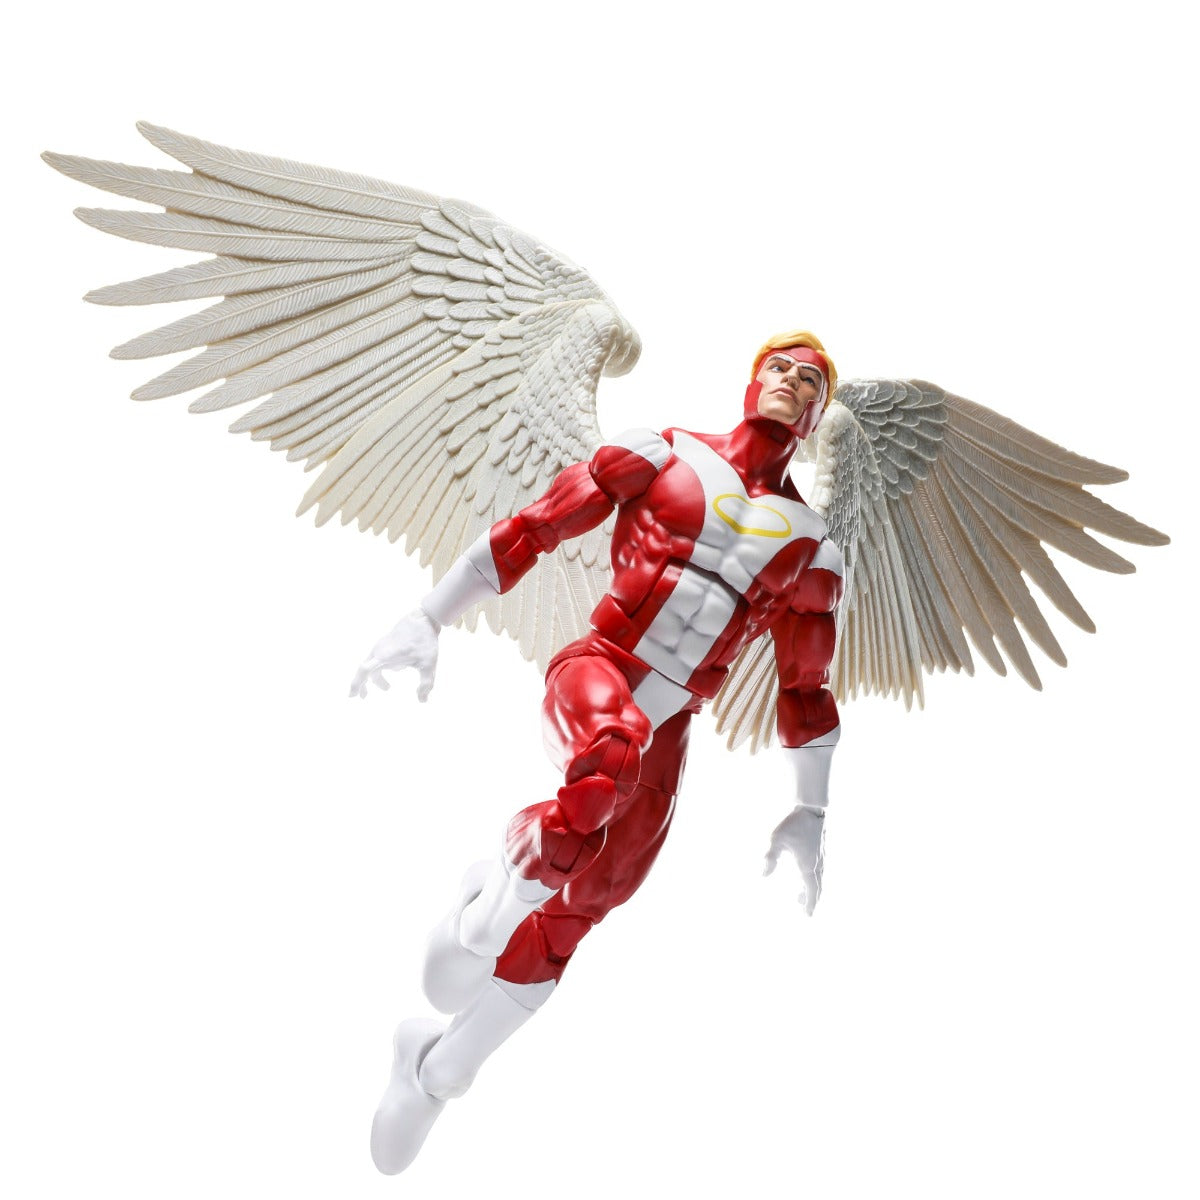 Marvel Legends Series Marvel's Angel, Deluxe X-Men Comics Collectible 6-Inch Action Figure